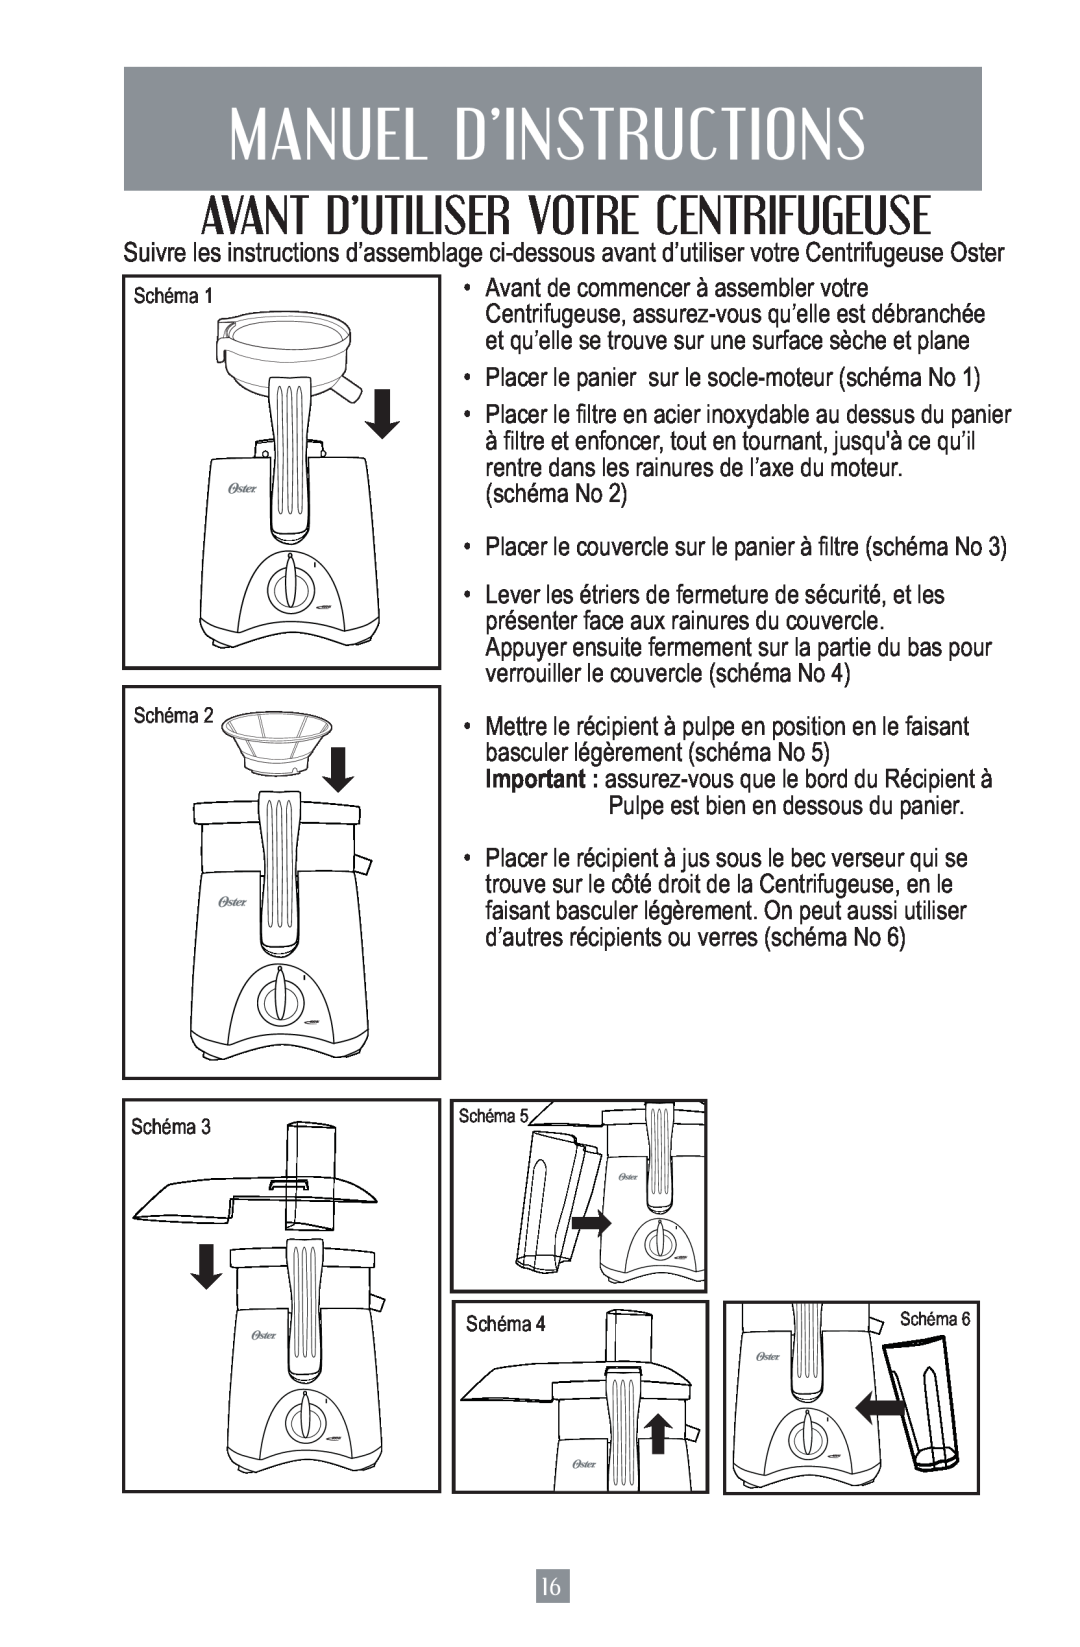 Oster 3157 Manuel D’Instructions, Avant D’Utiliser Votre Centrifugeuse, Placer le panier sur le socle-moteur schéma No 